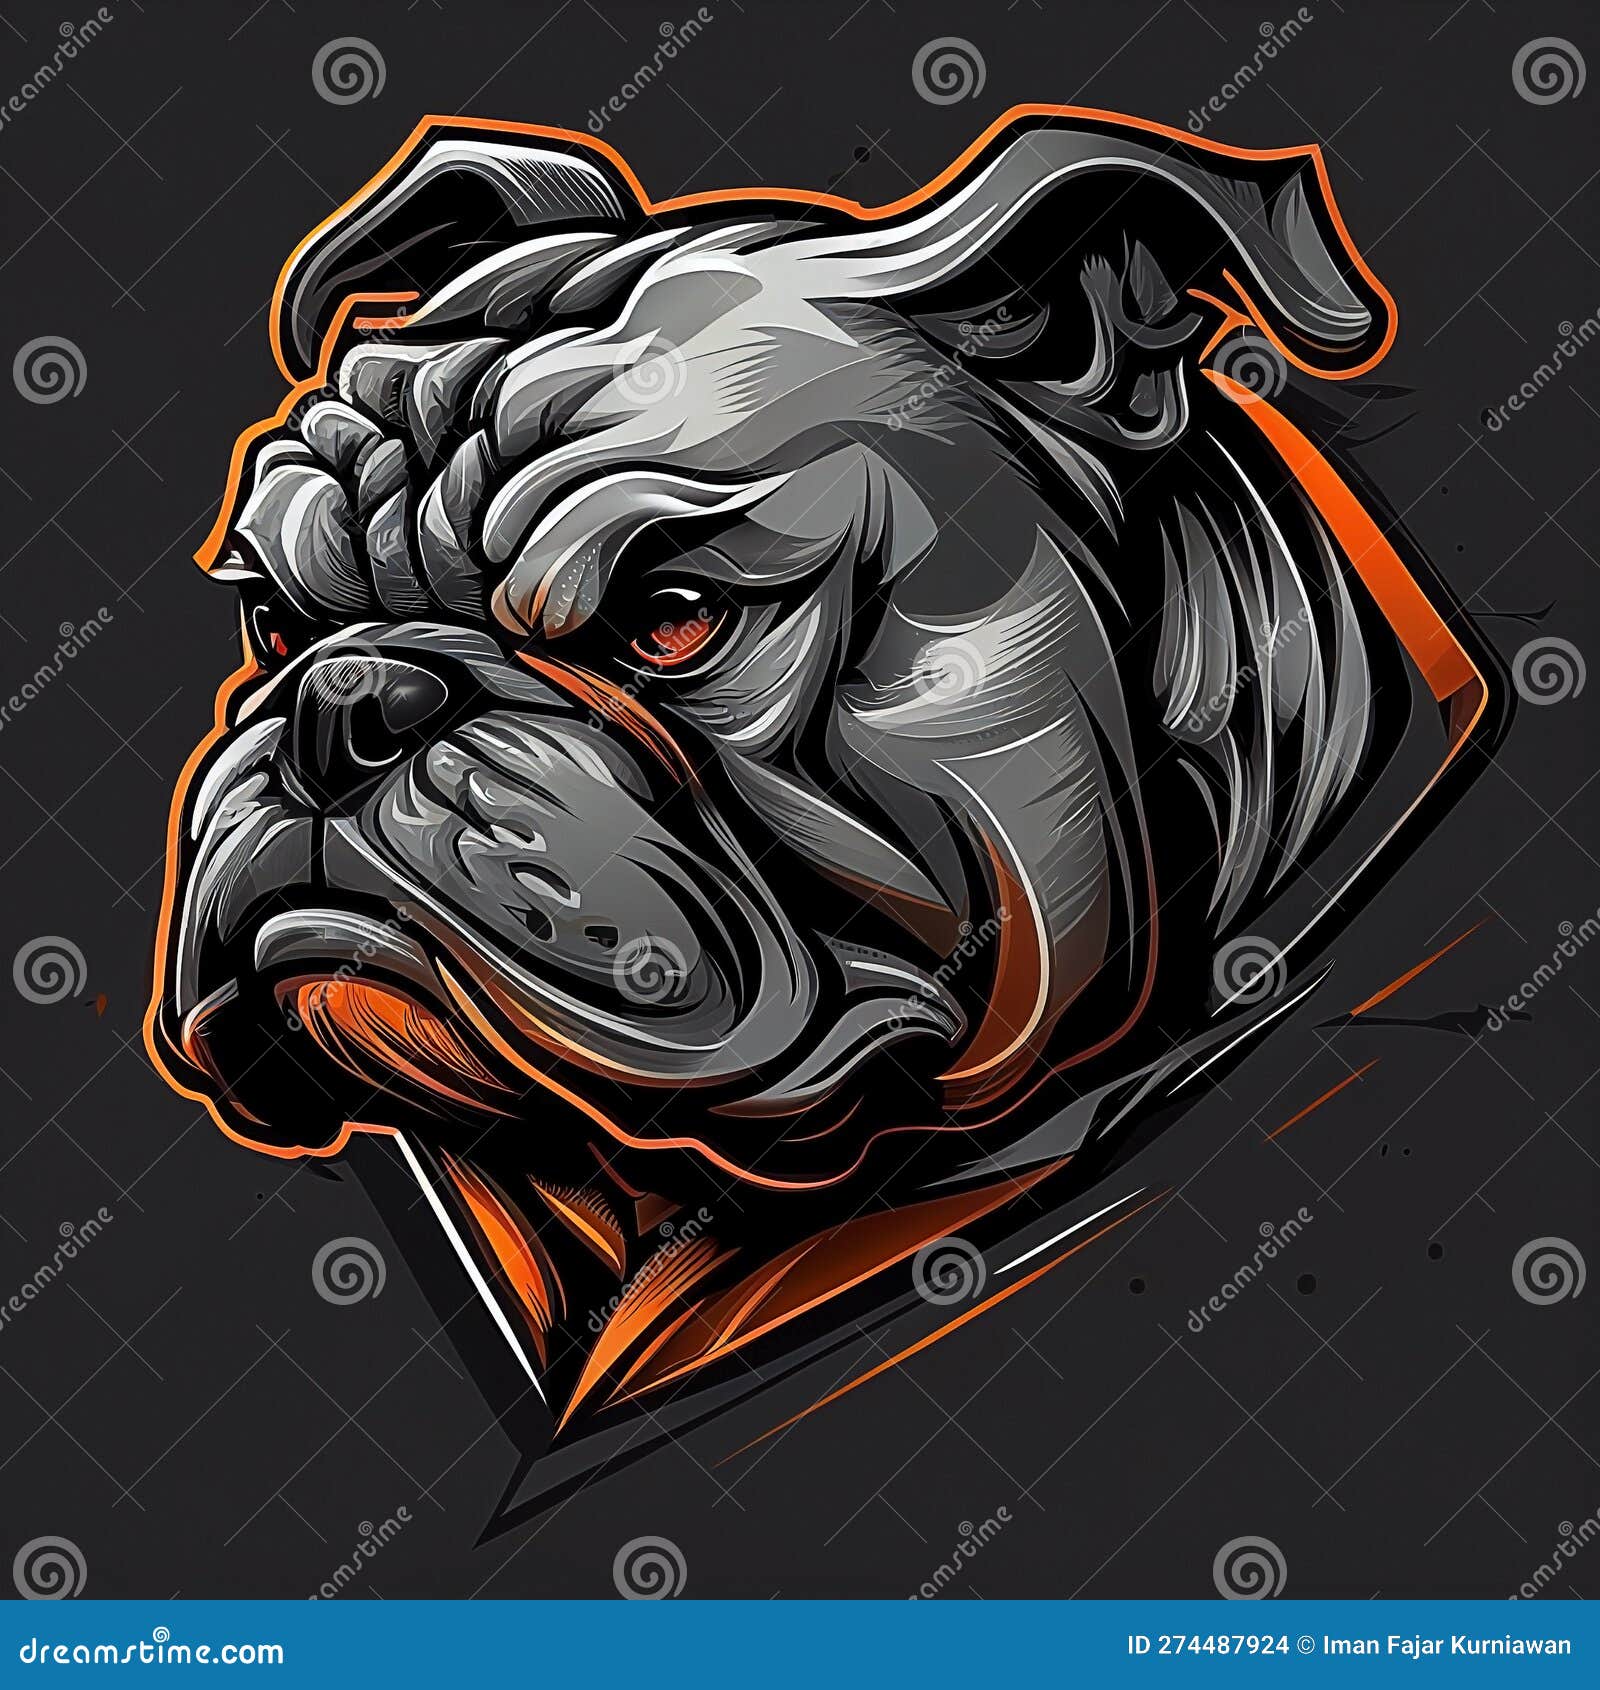 Logo designs of bulldog stock illustration. Illustration of bulldog ...